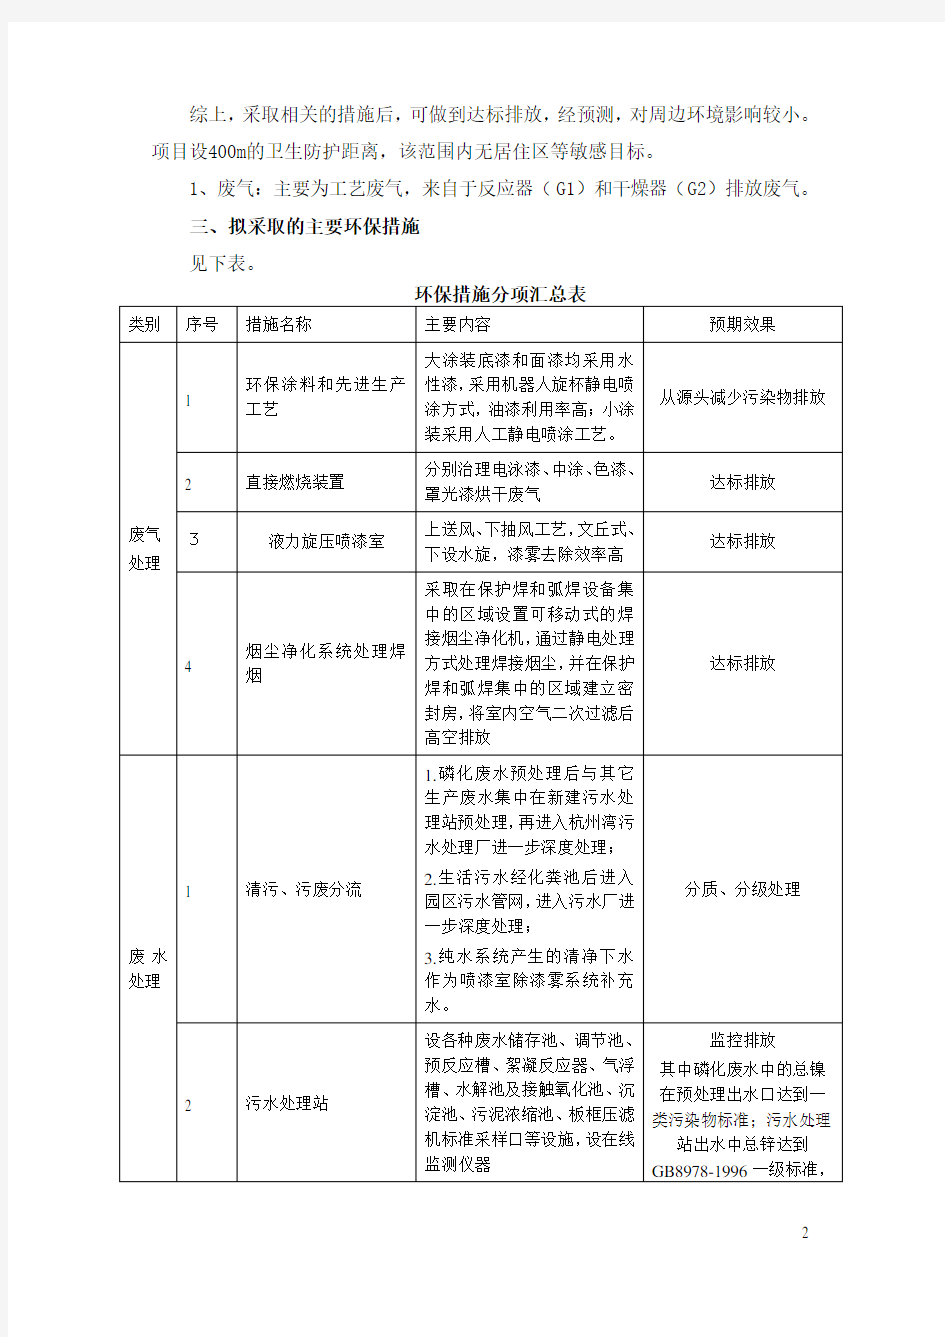 浙江吉利汽车有限公司帝豪轿车生产线技术改造项目环境影响评价评价